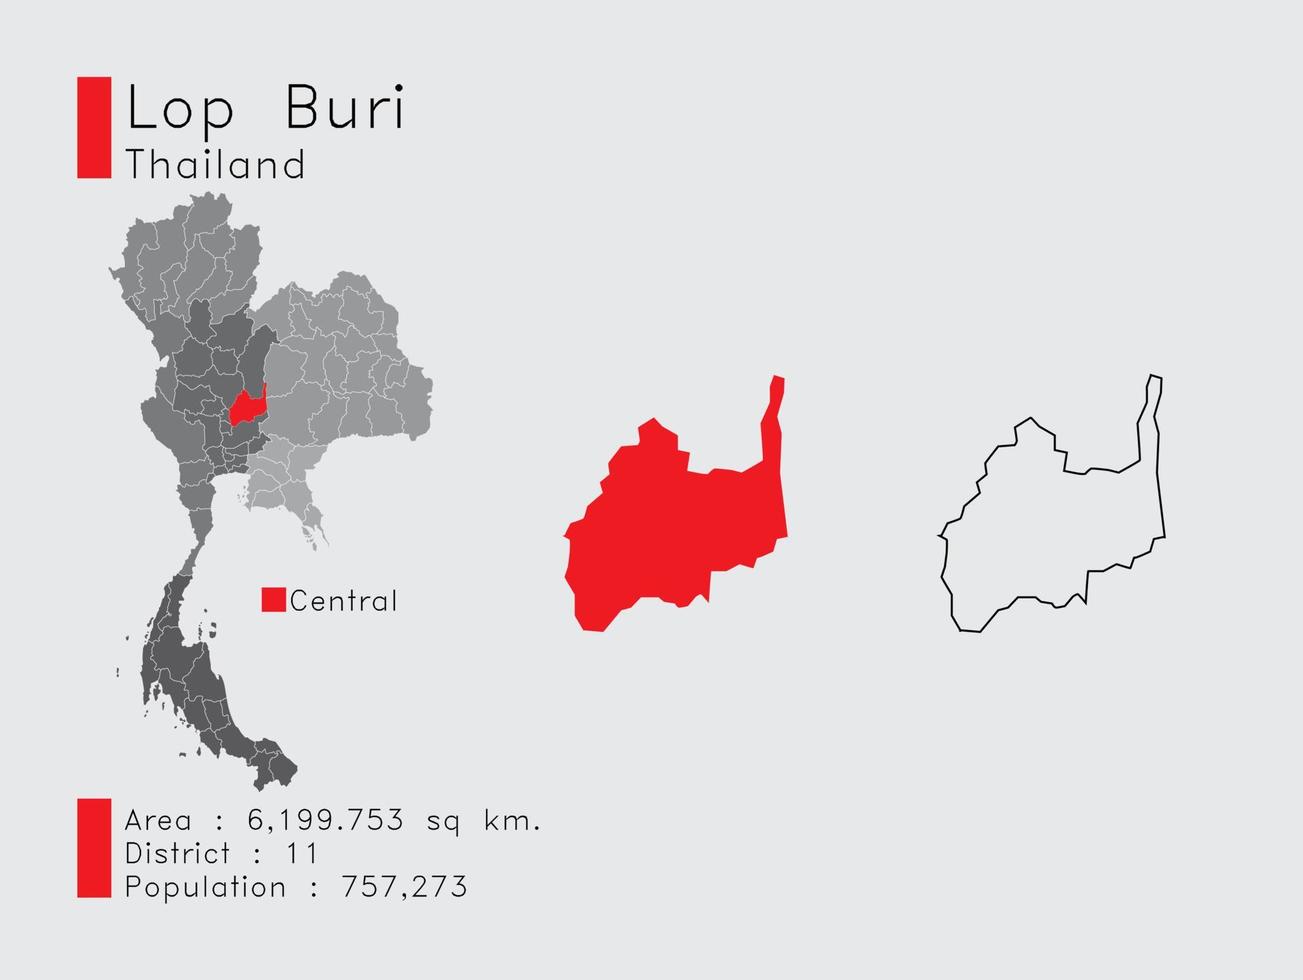 lop buri position in thailand eine reihe von infografikelementen für die provinz. und Bereich Bezirk Bevölkerung und Gliederung. Vektor mit grauem Hintergrund.